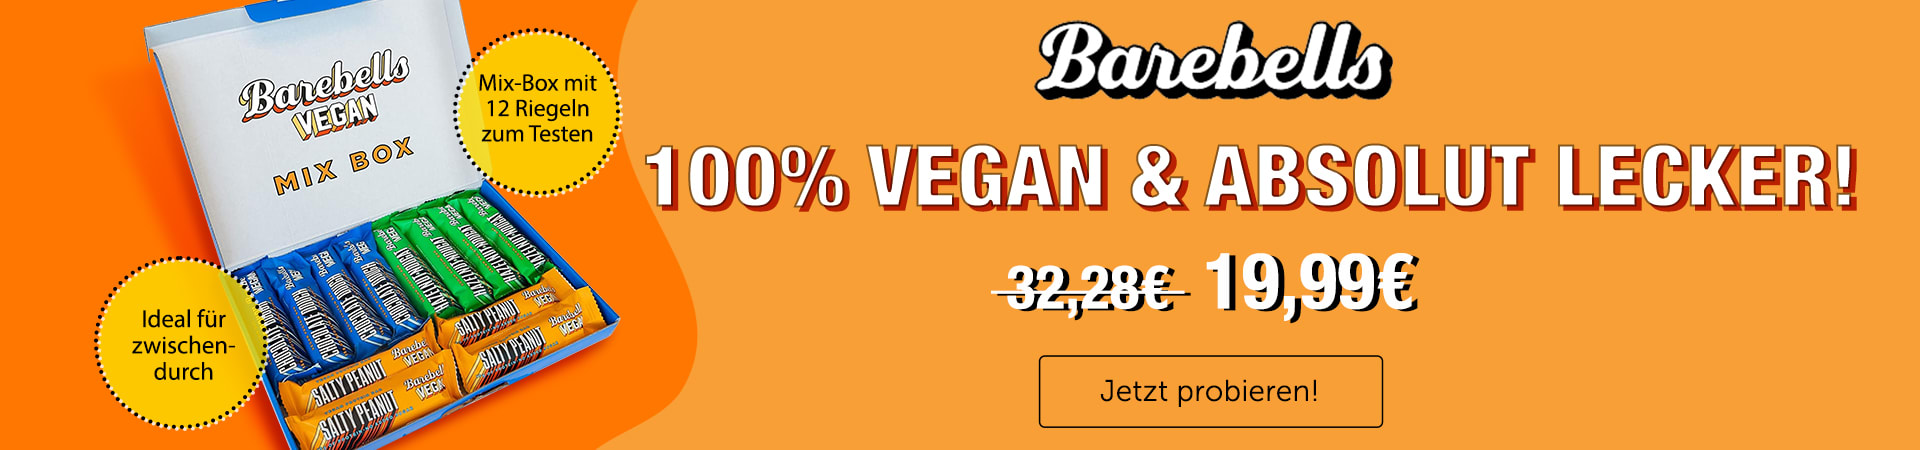 Entdecke jetzt die veganen Proteinbars von Barebells  - unbeschreiblich lecker und 100% Vegan!